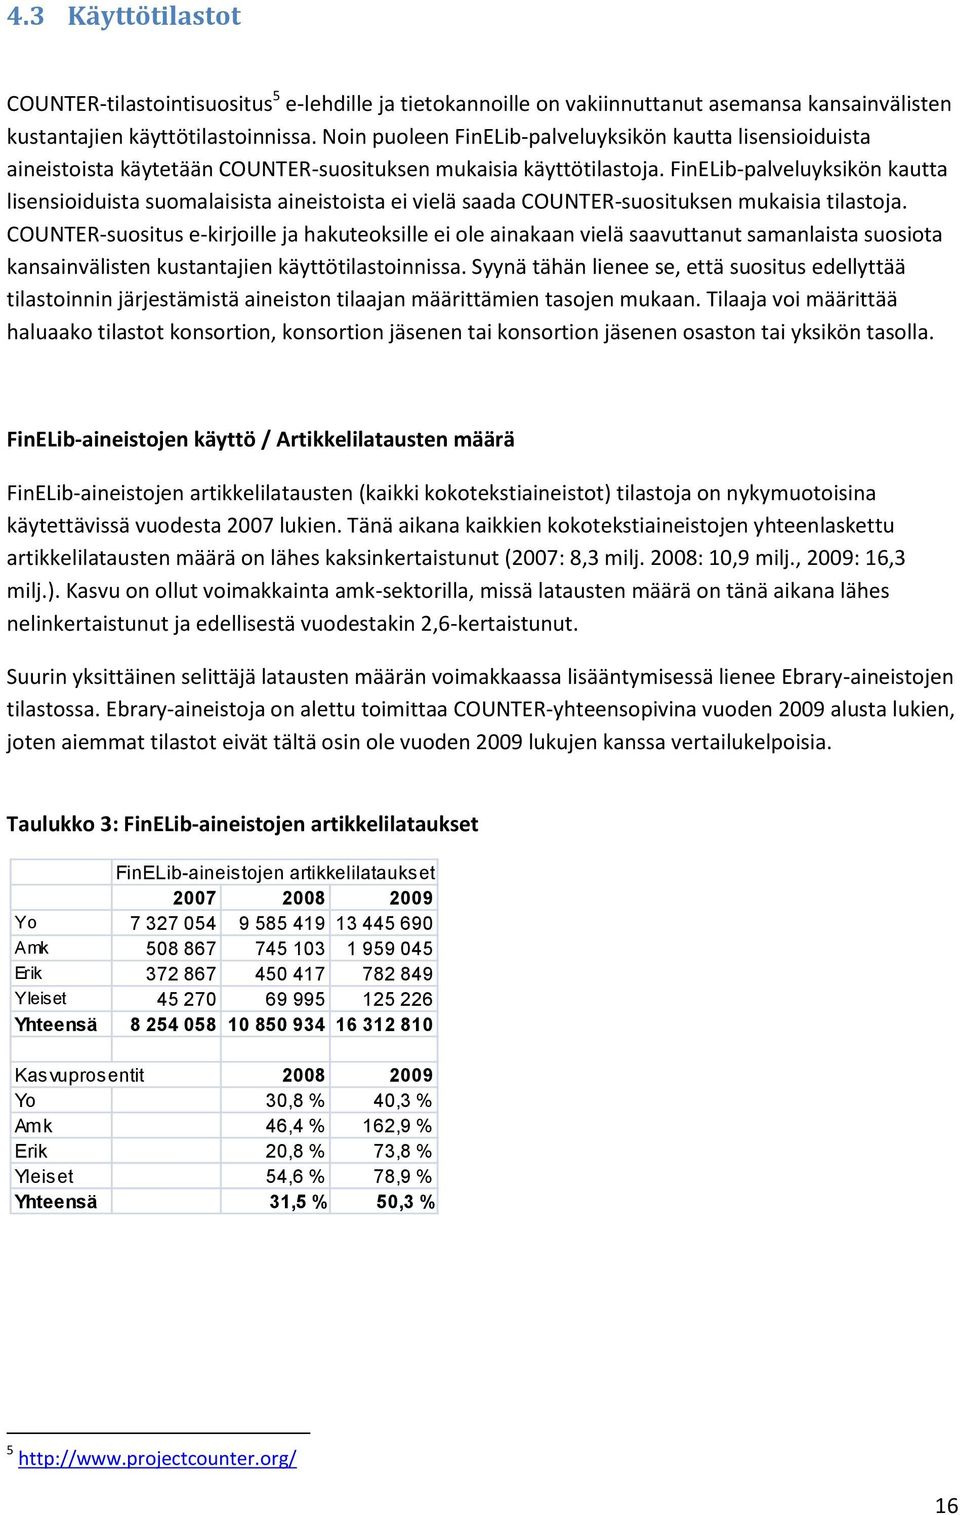 FinELib-palveluyksikön kautta lisensioiduista suomalaisista aineistoista ei vielä saada COUNTER-suosituksen mukaisia tilastoja.